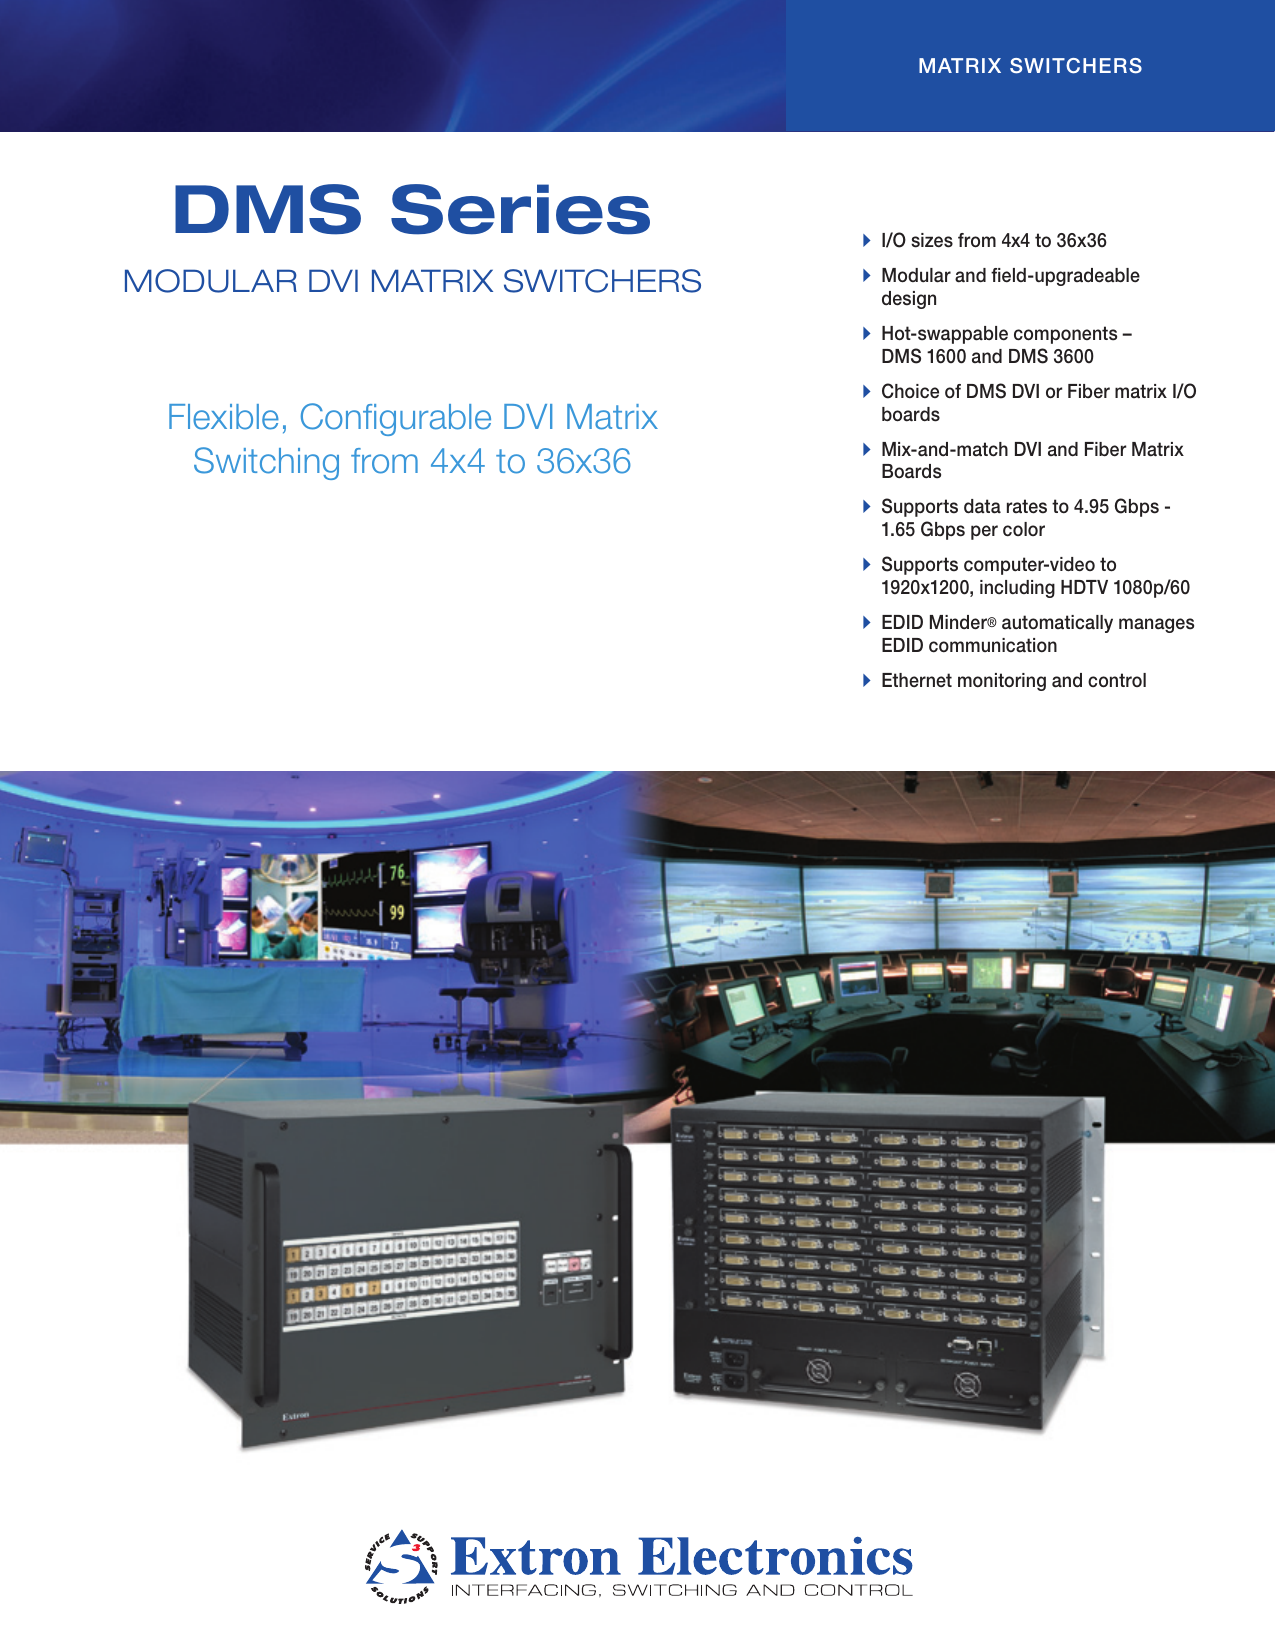 Extron Dms 1600 TMDS Digital Matrix Switcher W/2 x DMS 44 DVI 